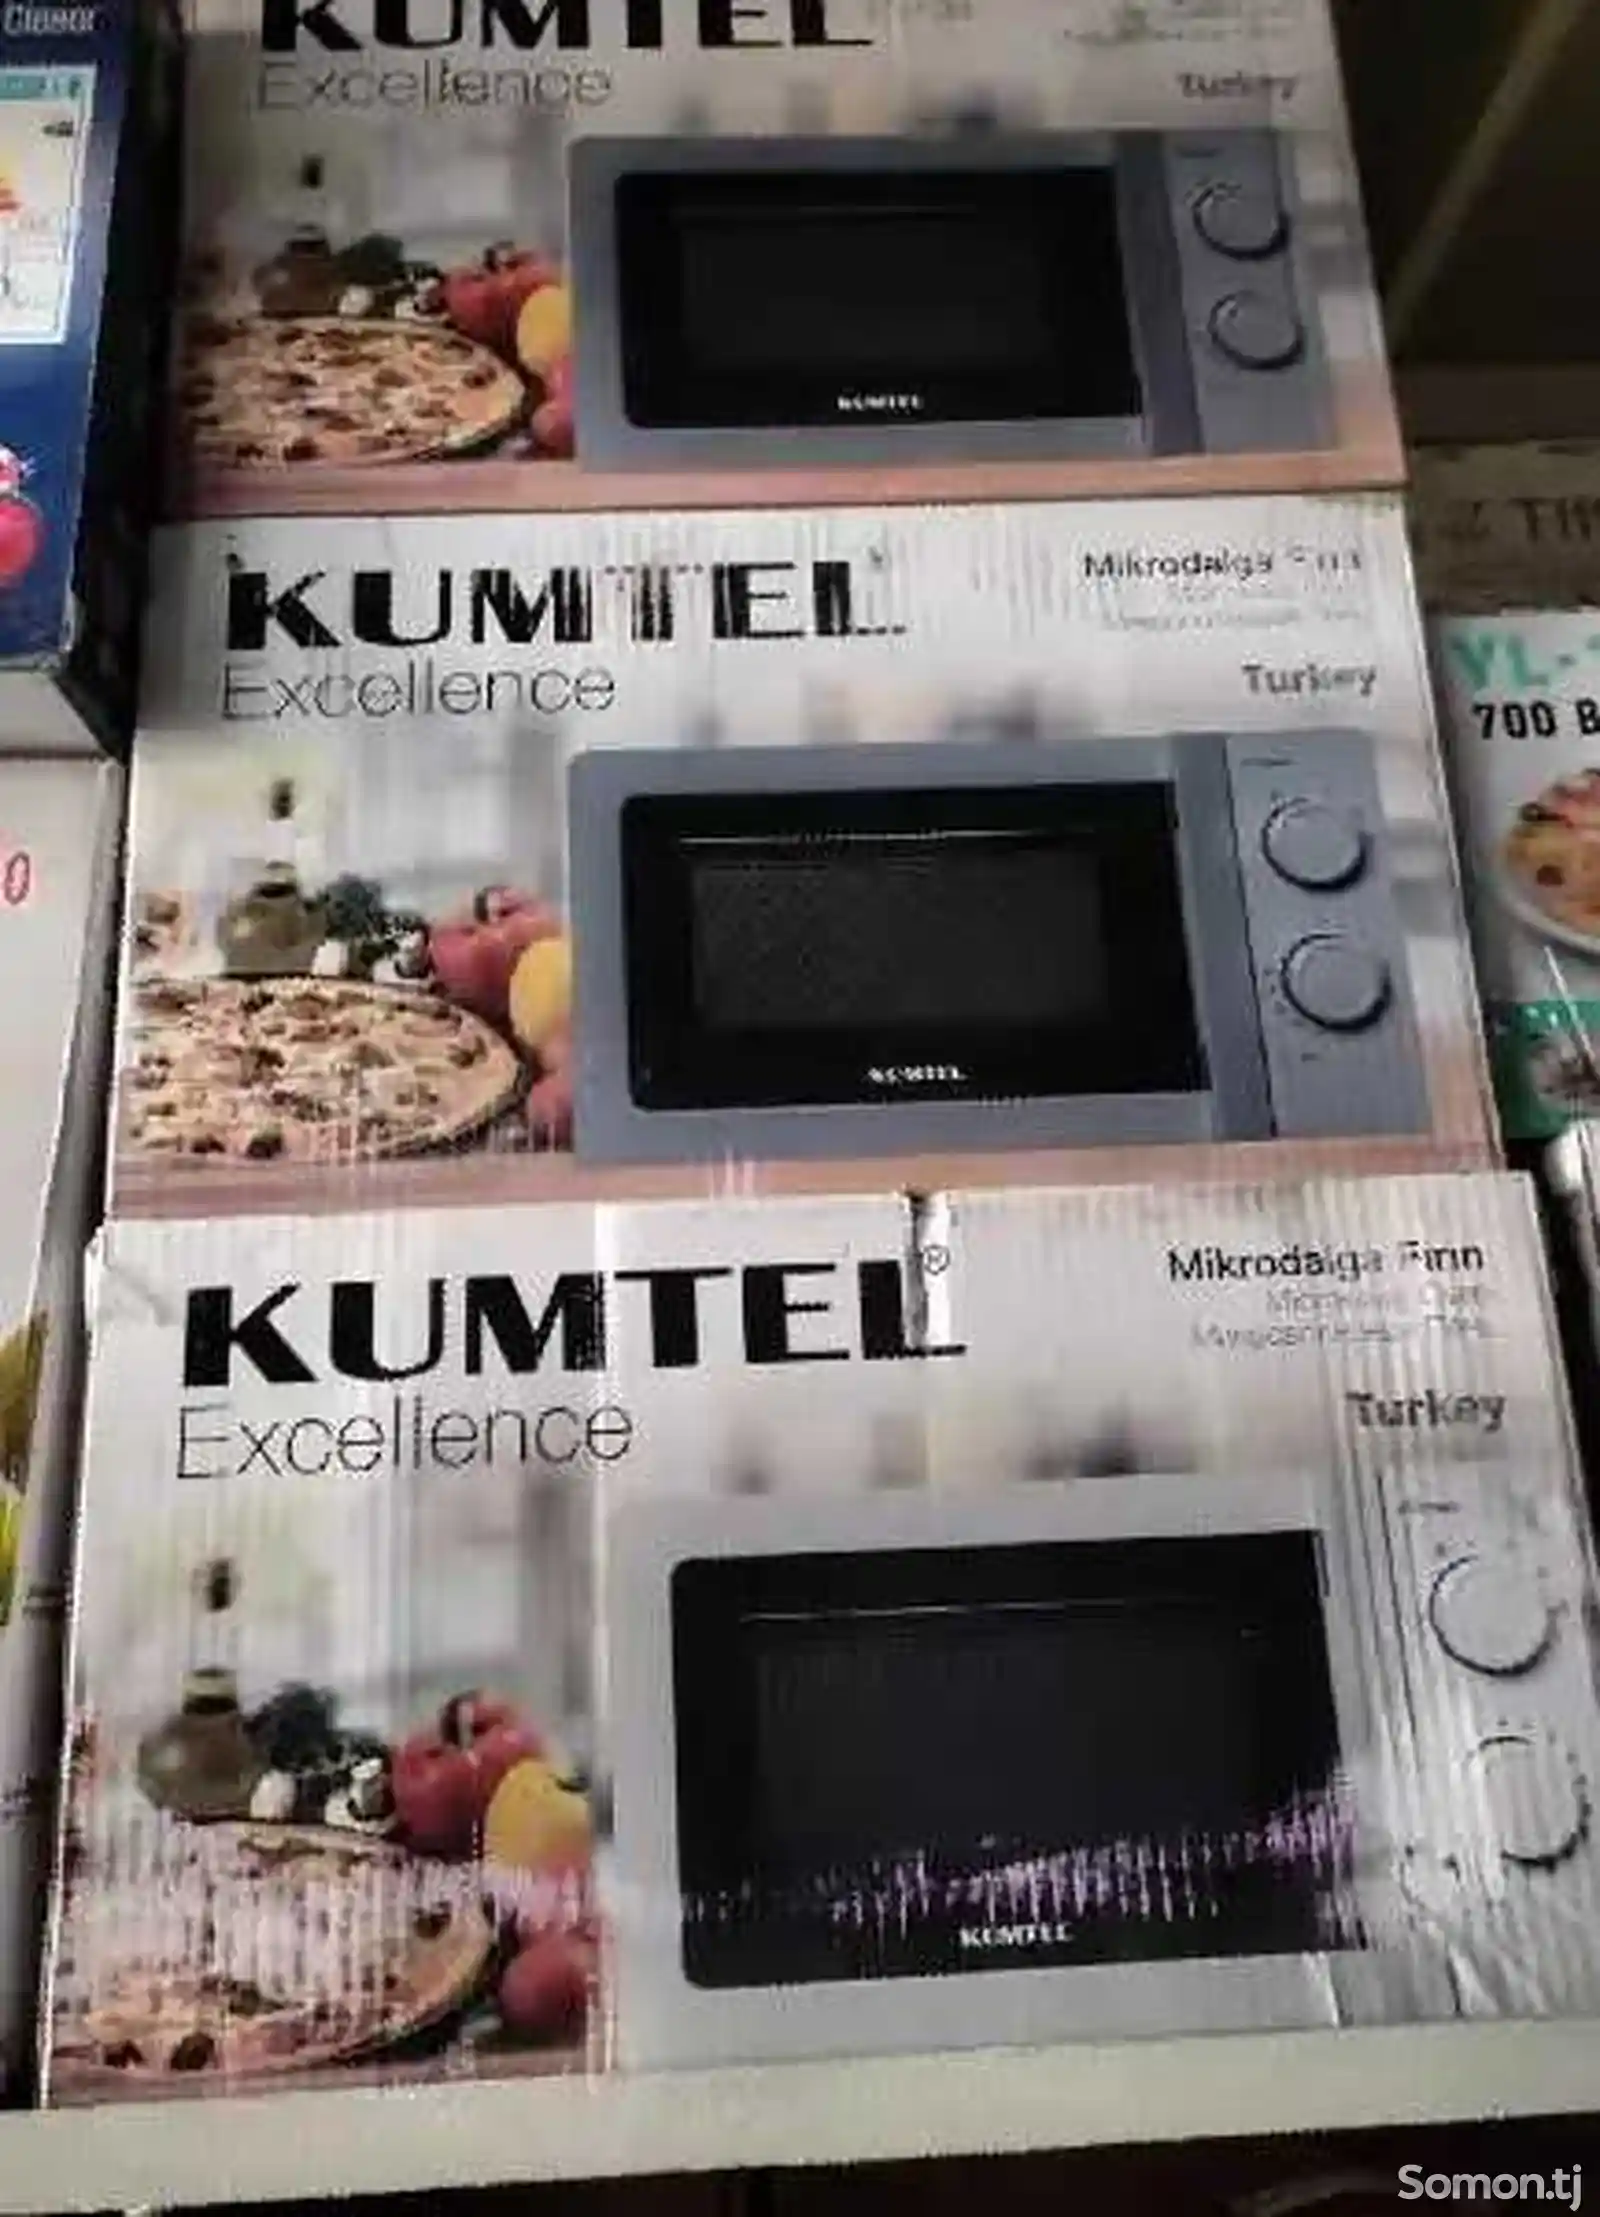 Микроволновая печь Kumtel-2